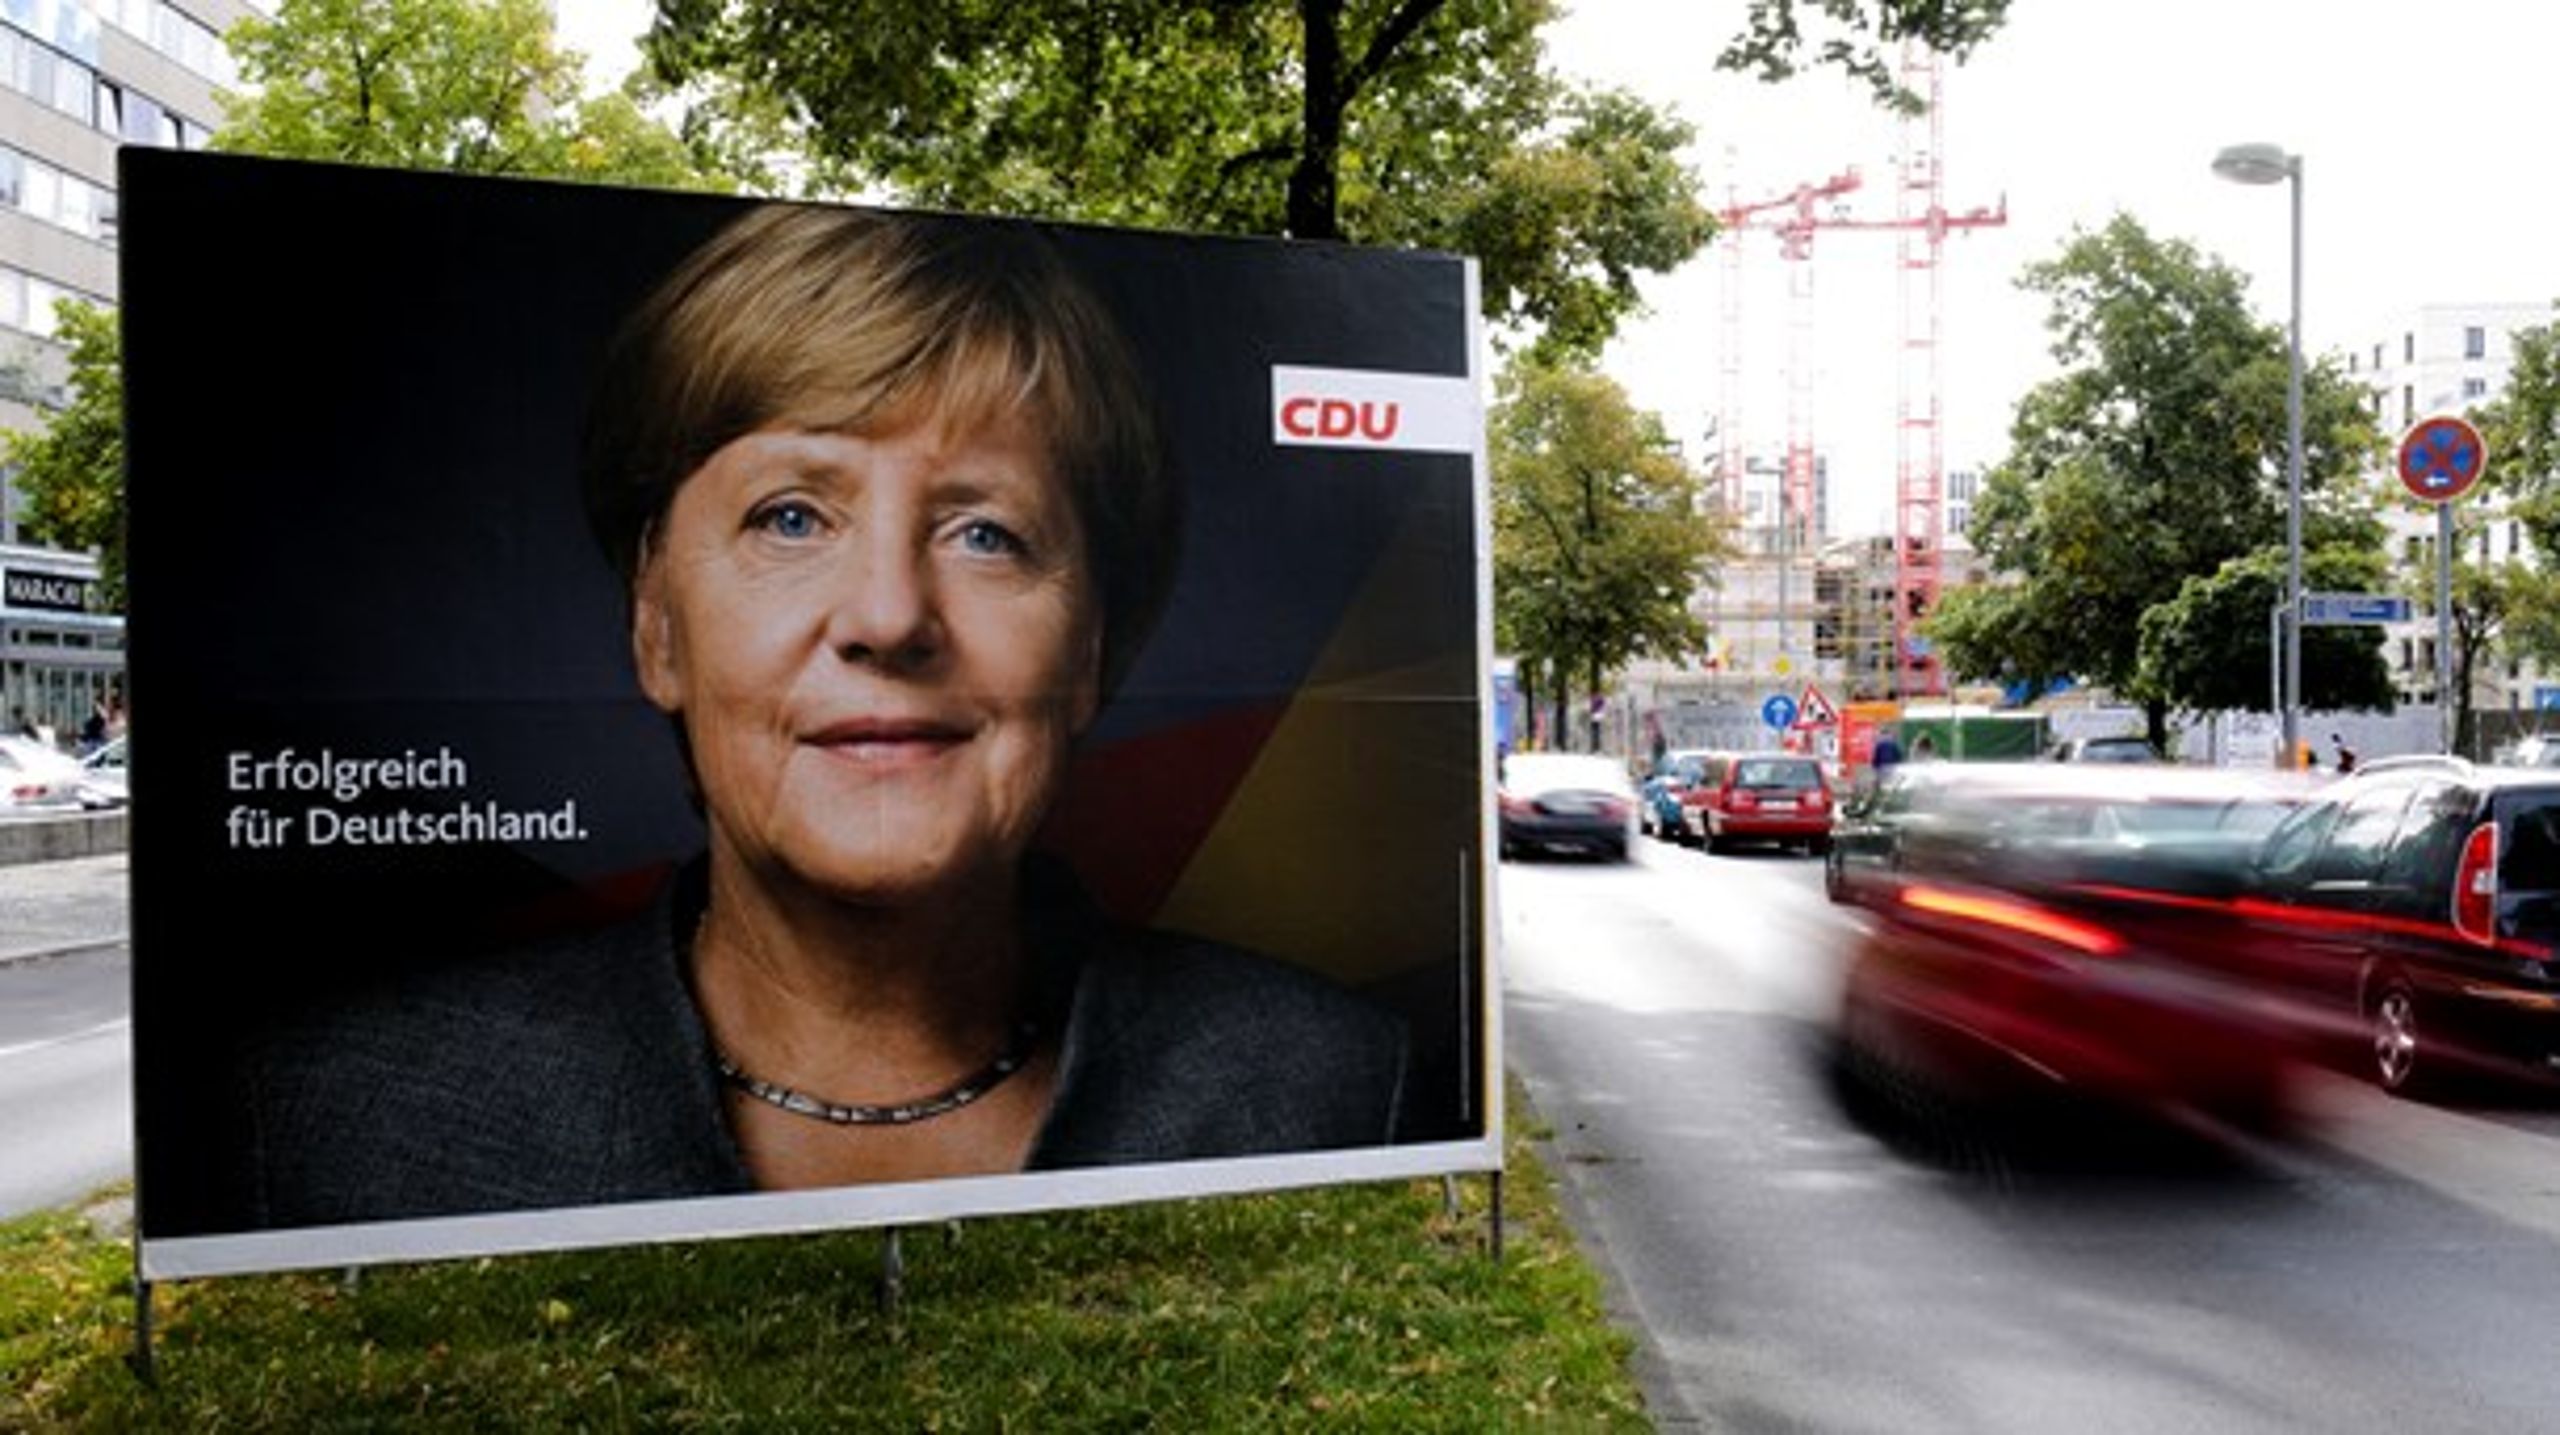 Tyskland afholder valg til Forbundsdagen 24. september. Et nyt debatpanel ser frem mod valget.